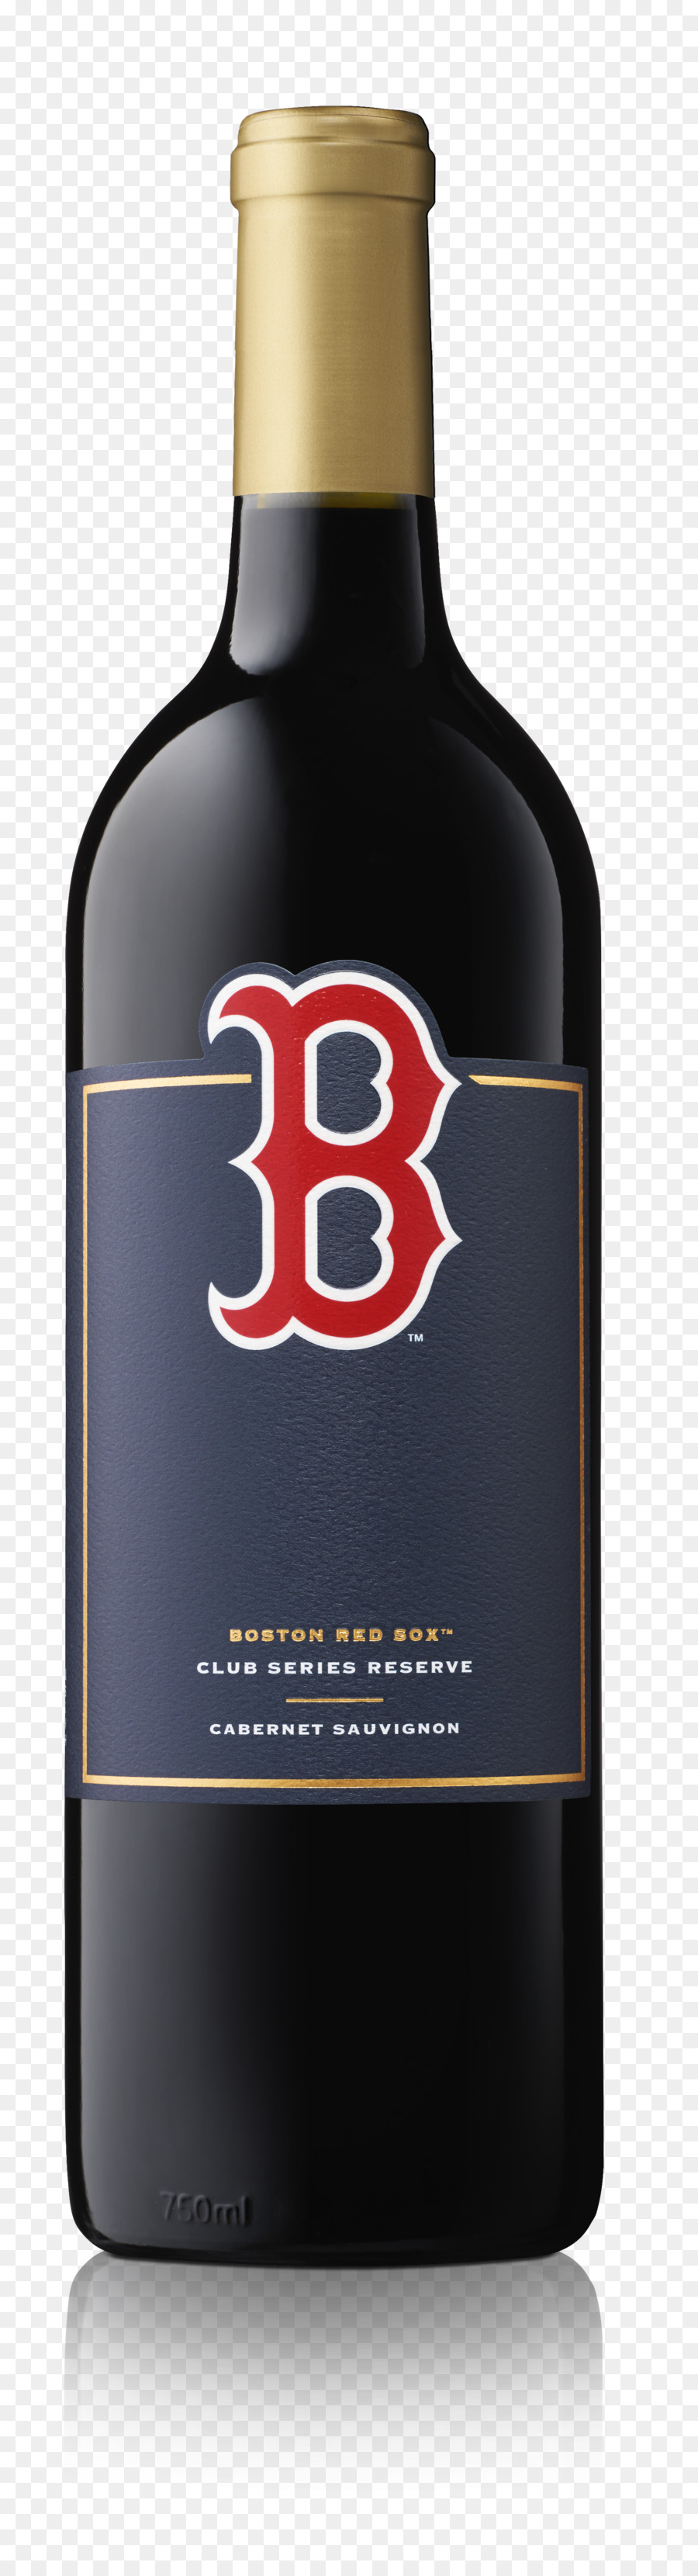 Dessertwein, Likör, Boston Red Sox Santa Hut - Stil 2012 - Wein